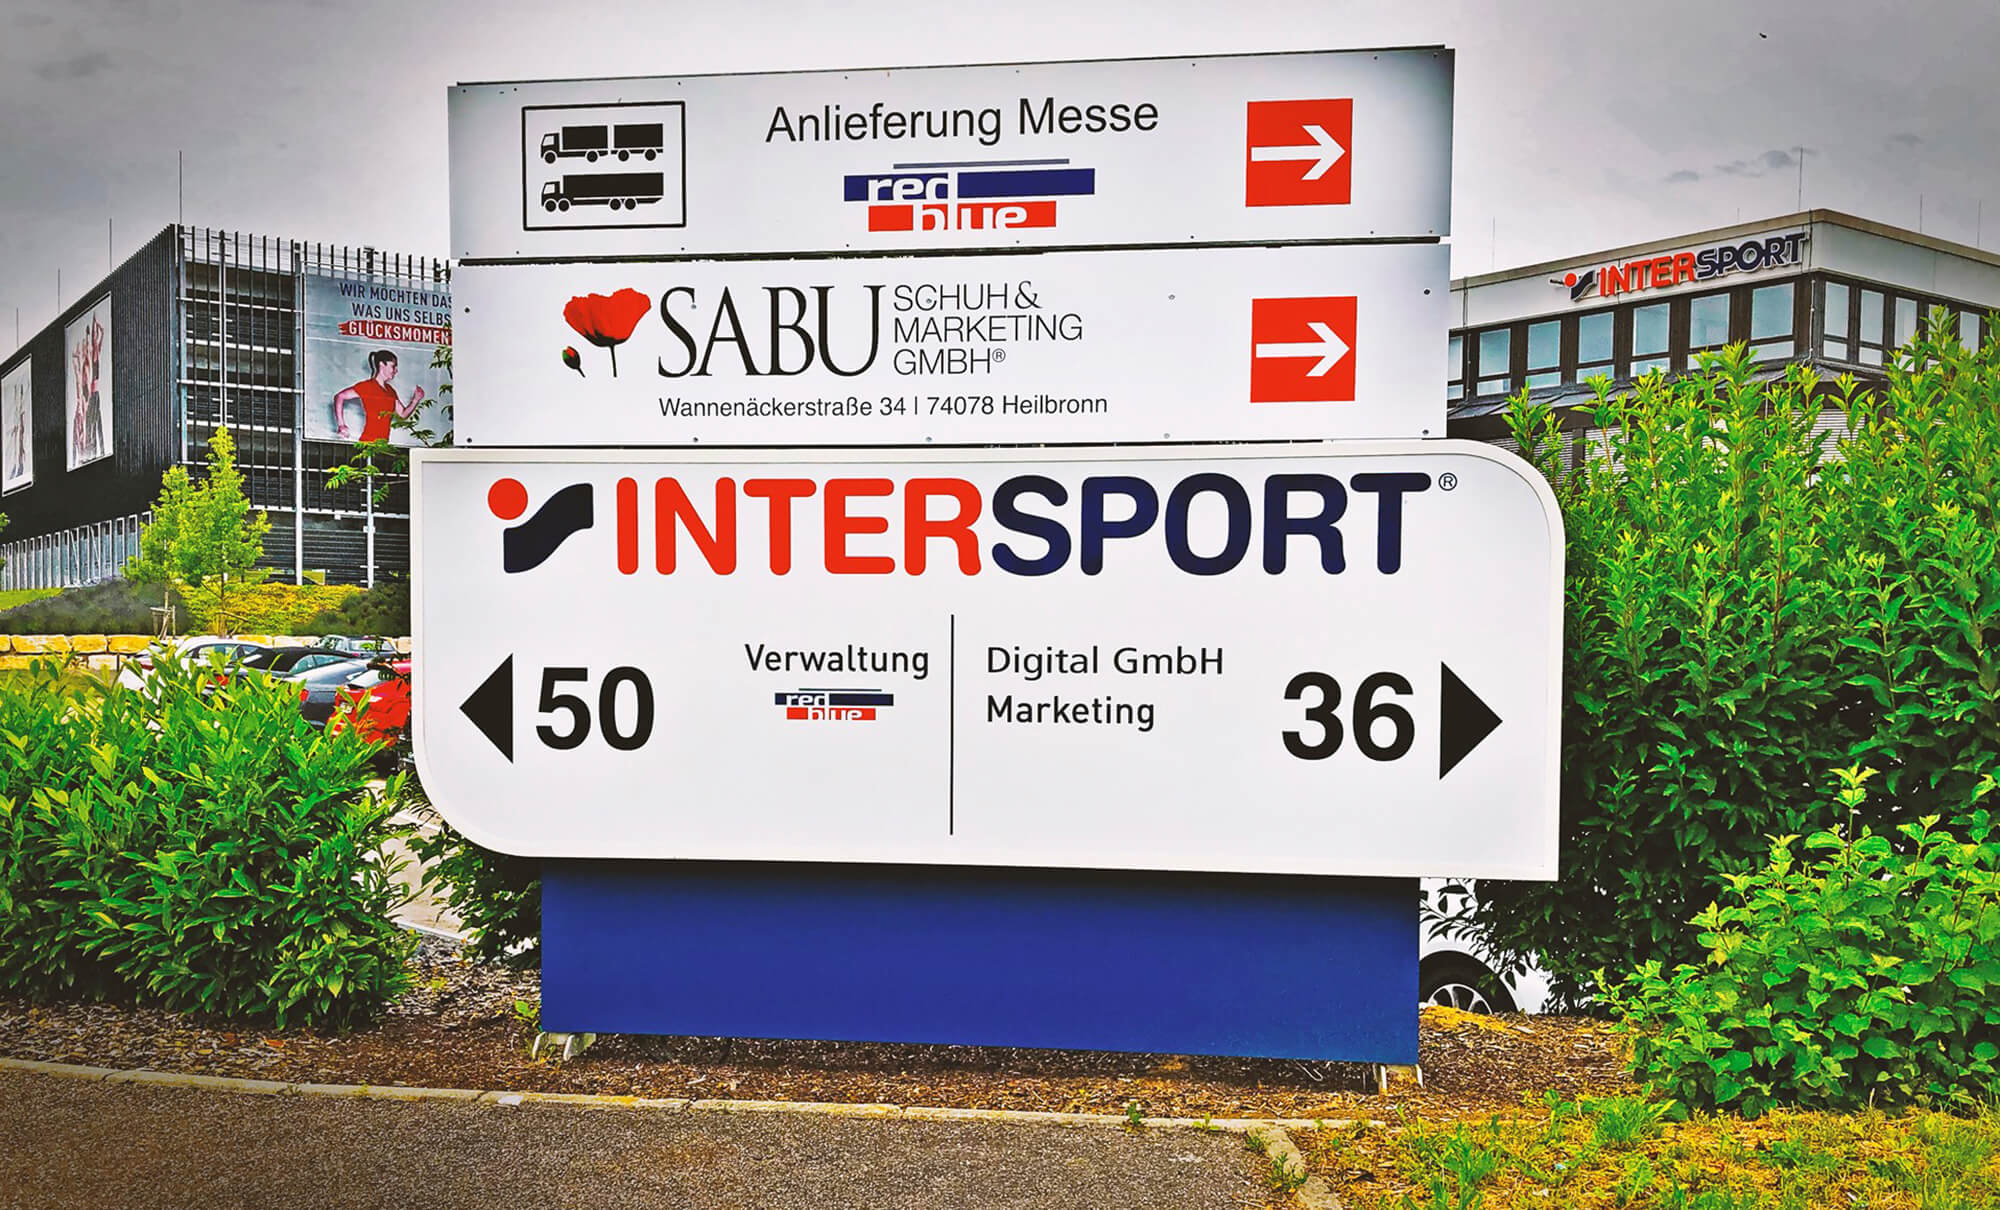 SignDesign Leistungen Schilder Banner Intersport Deutschland Beschilderung Wegweiser Werbung